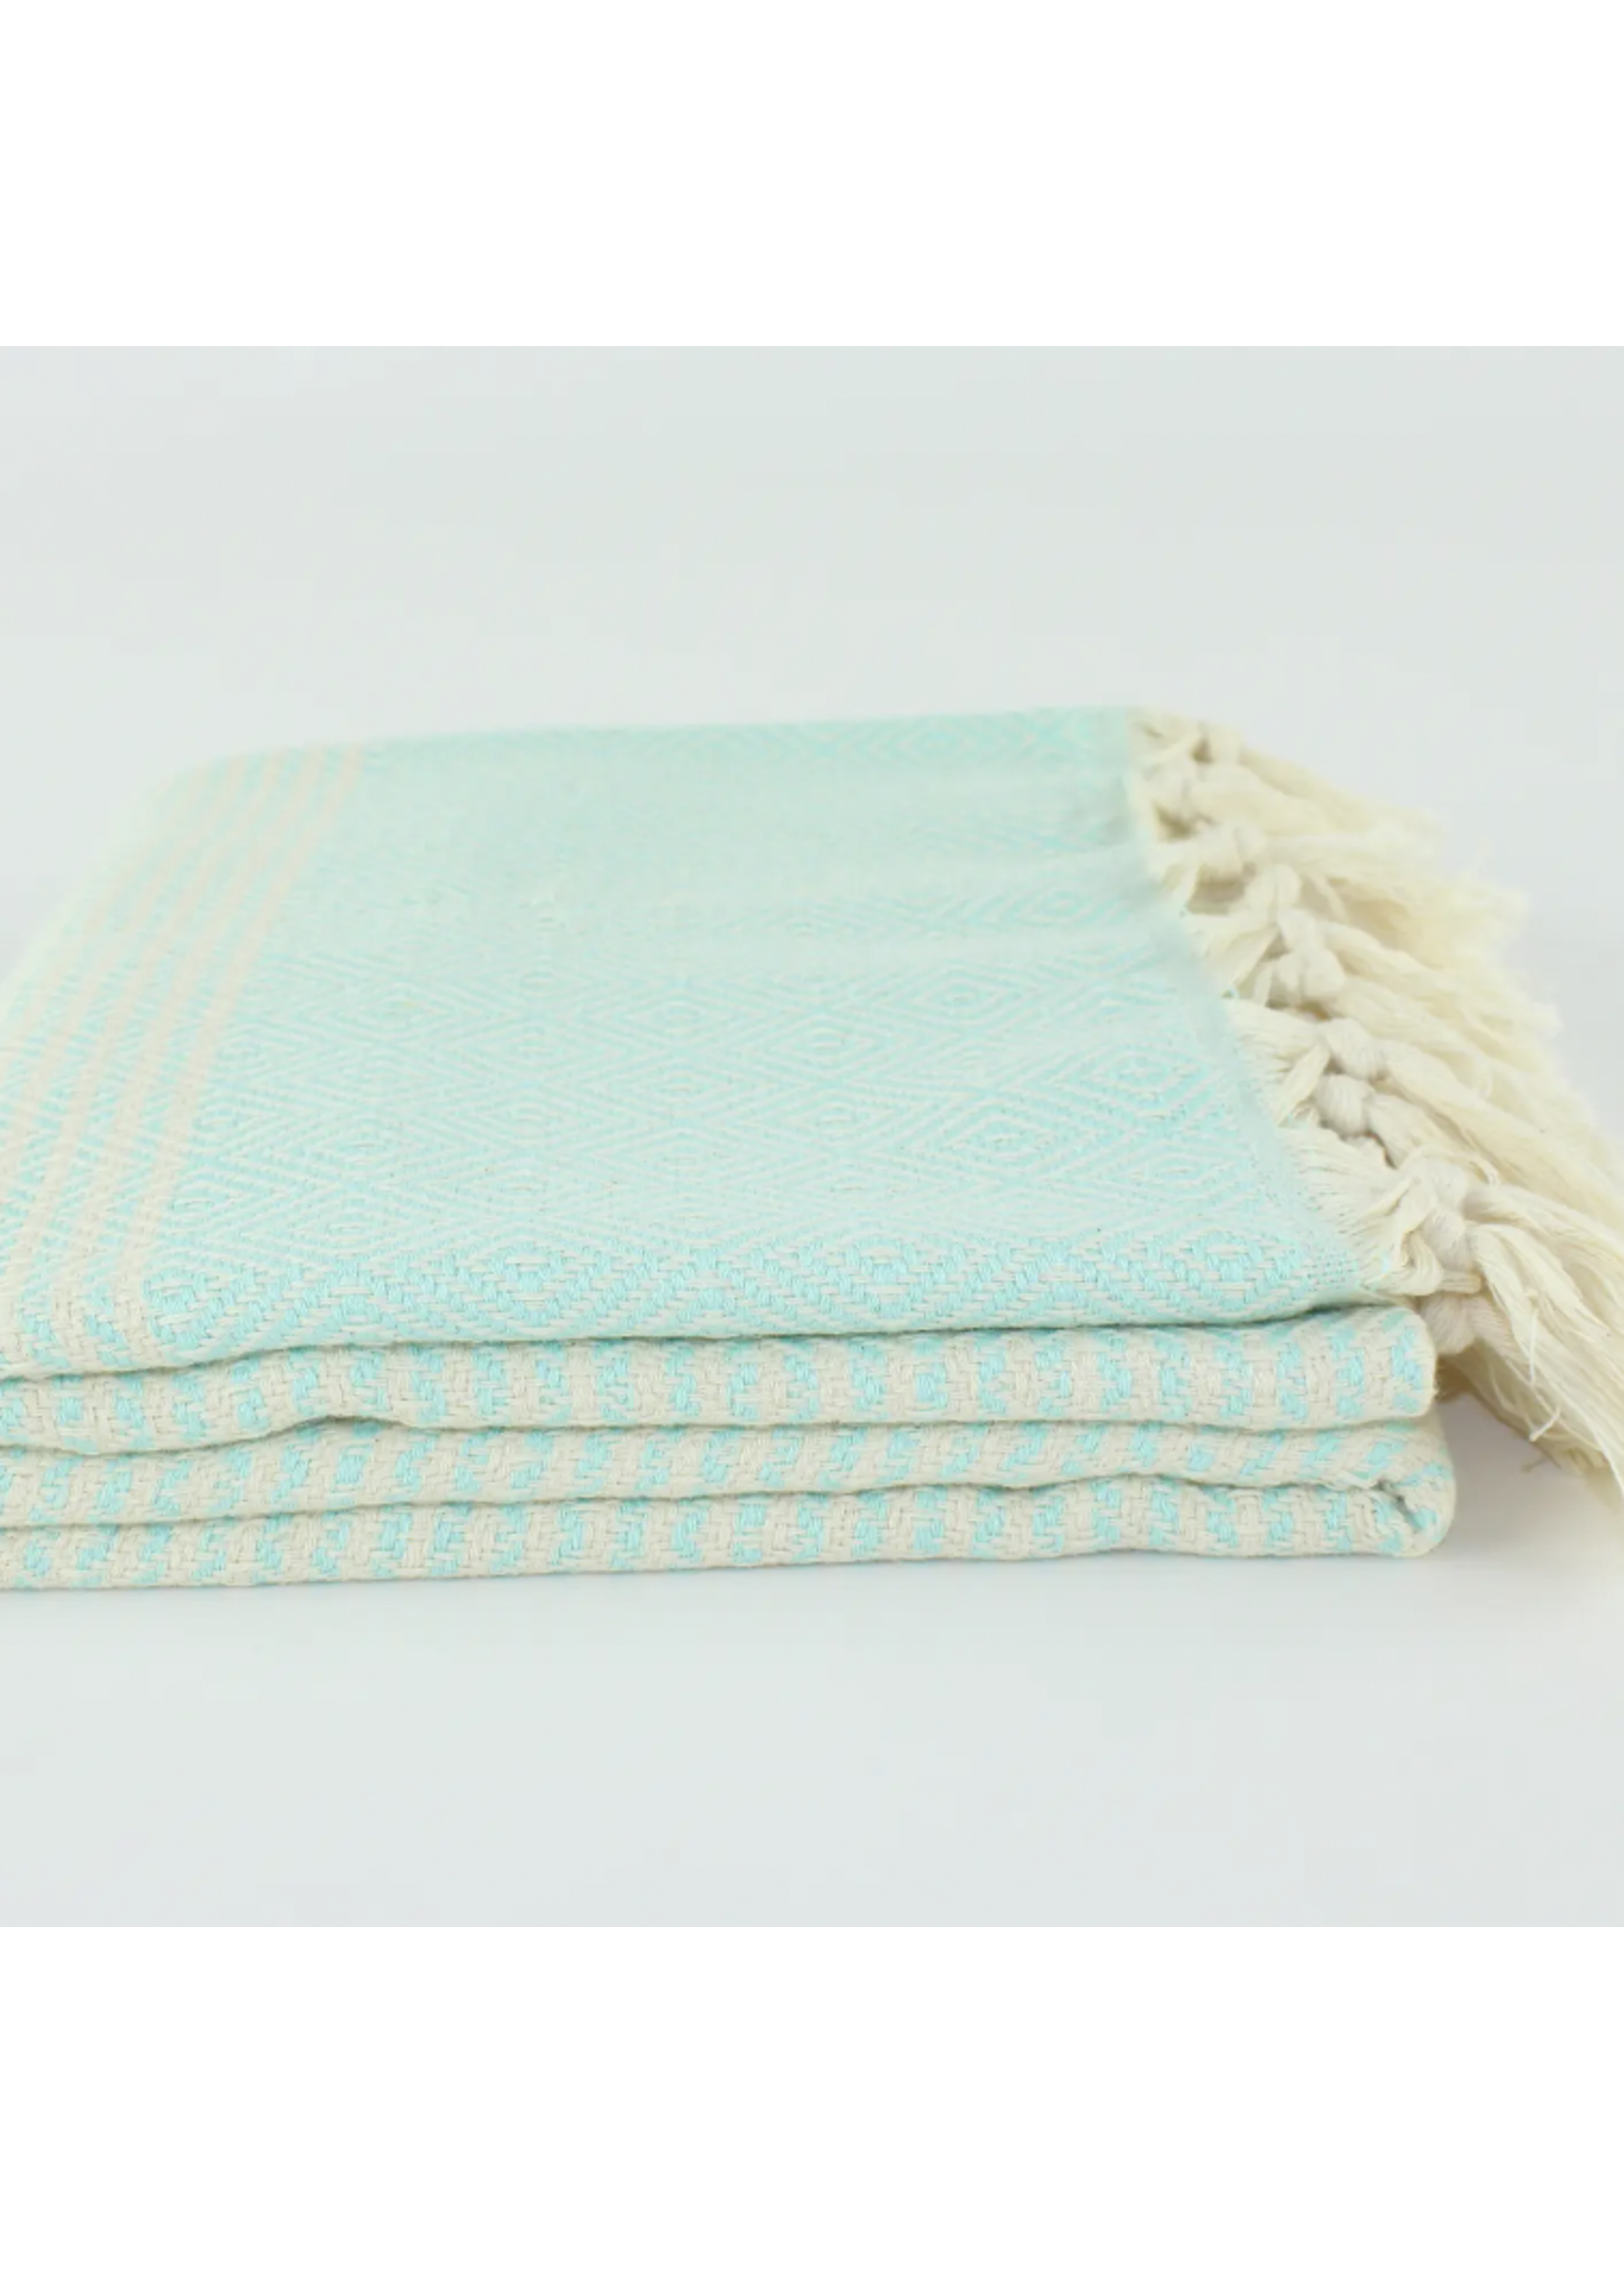 Turkish Linens & Towels Turkish Cotton Towel - Striped Diamond Mint